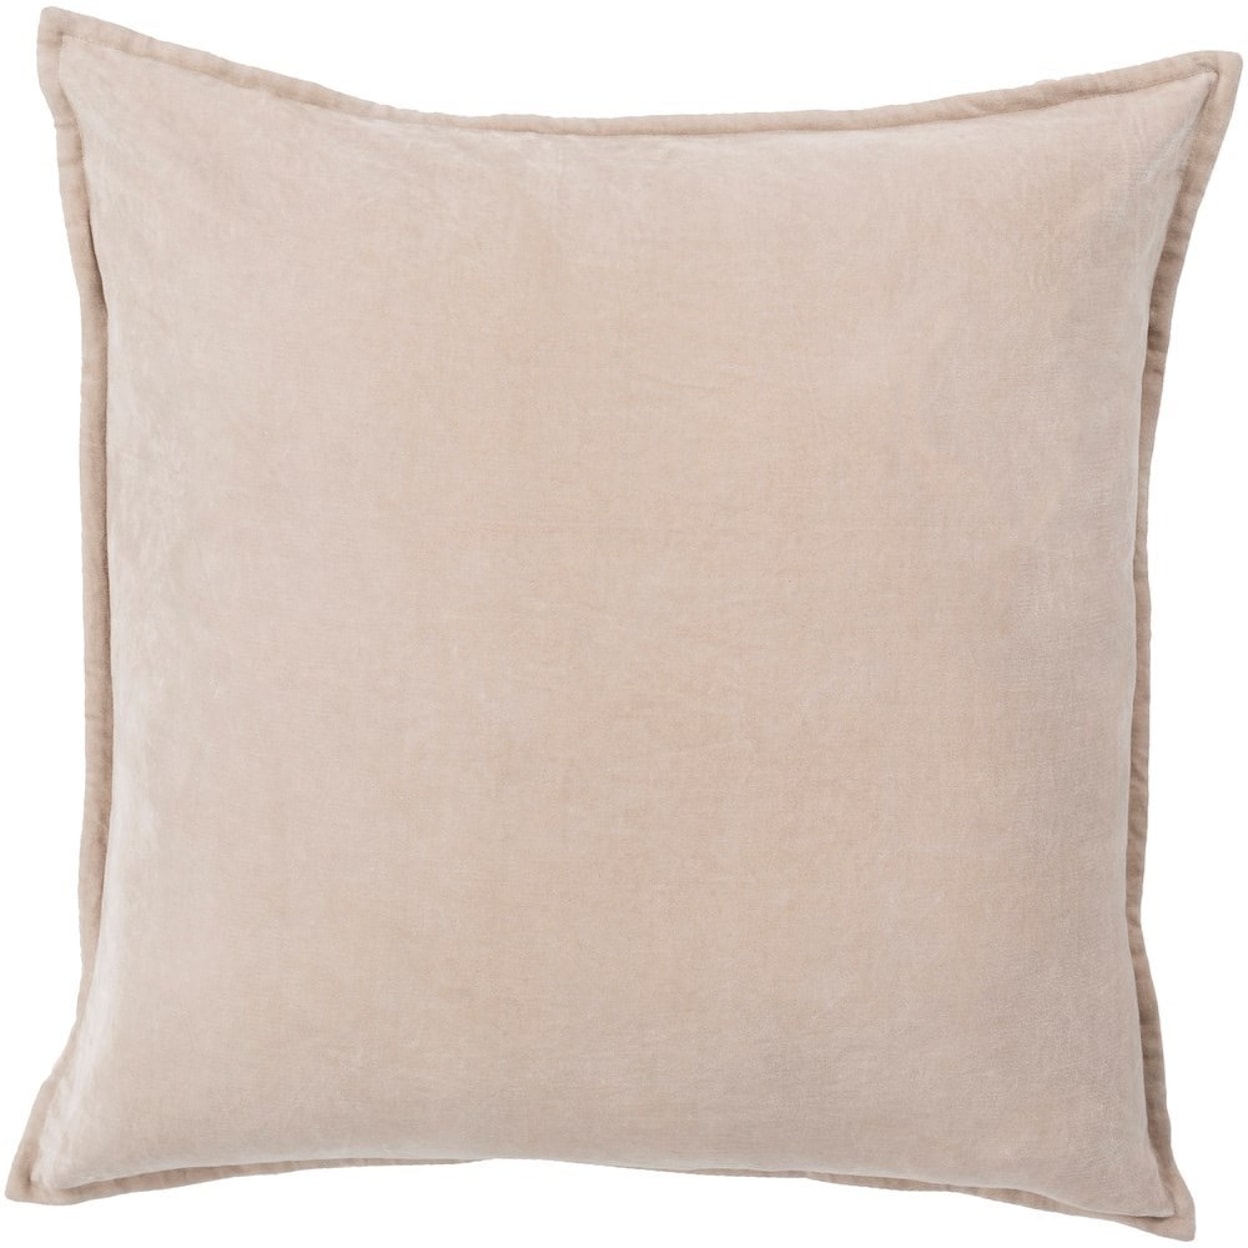 Surya Cotton Velvet 13 x 19 x 4 Down Pillow Kit